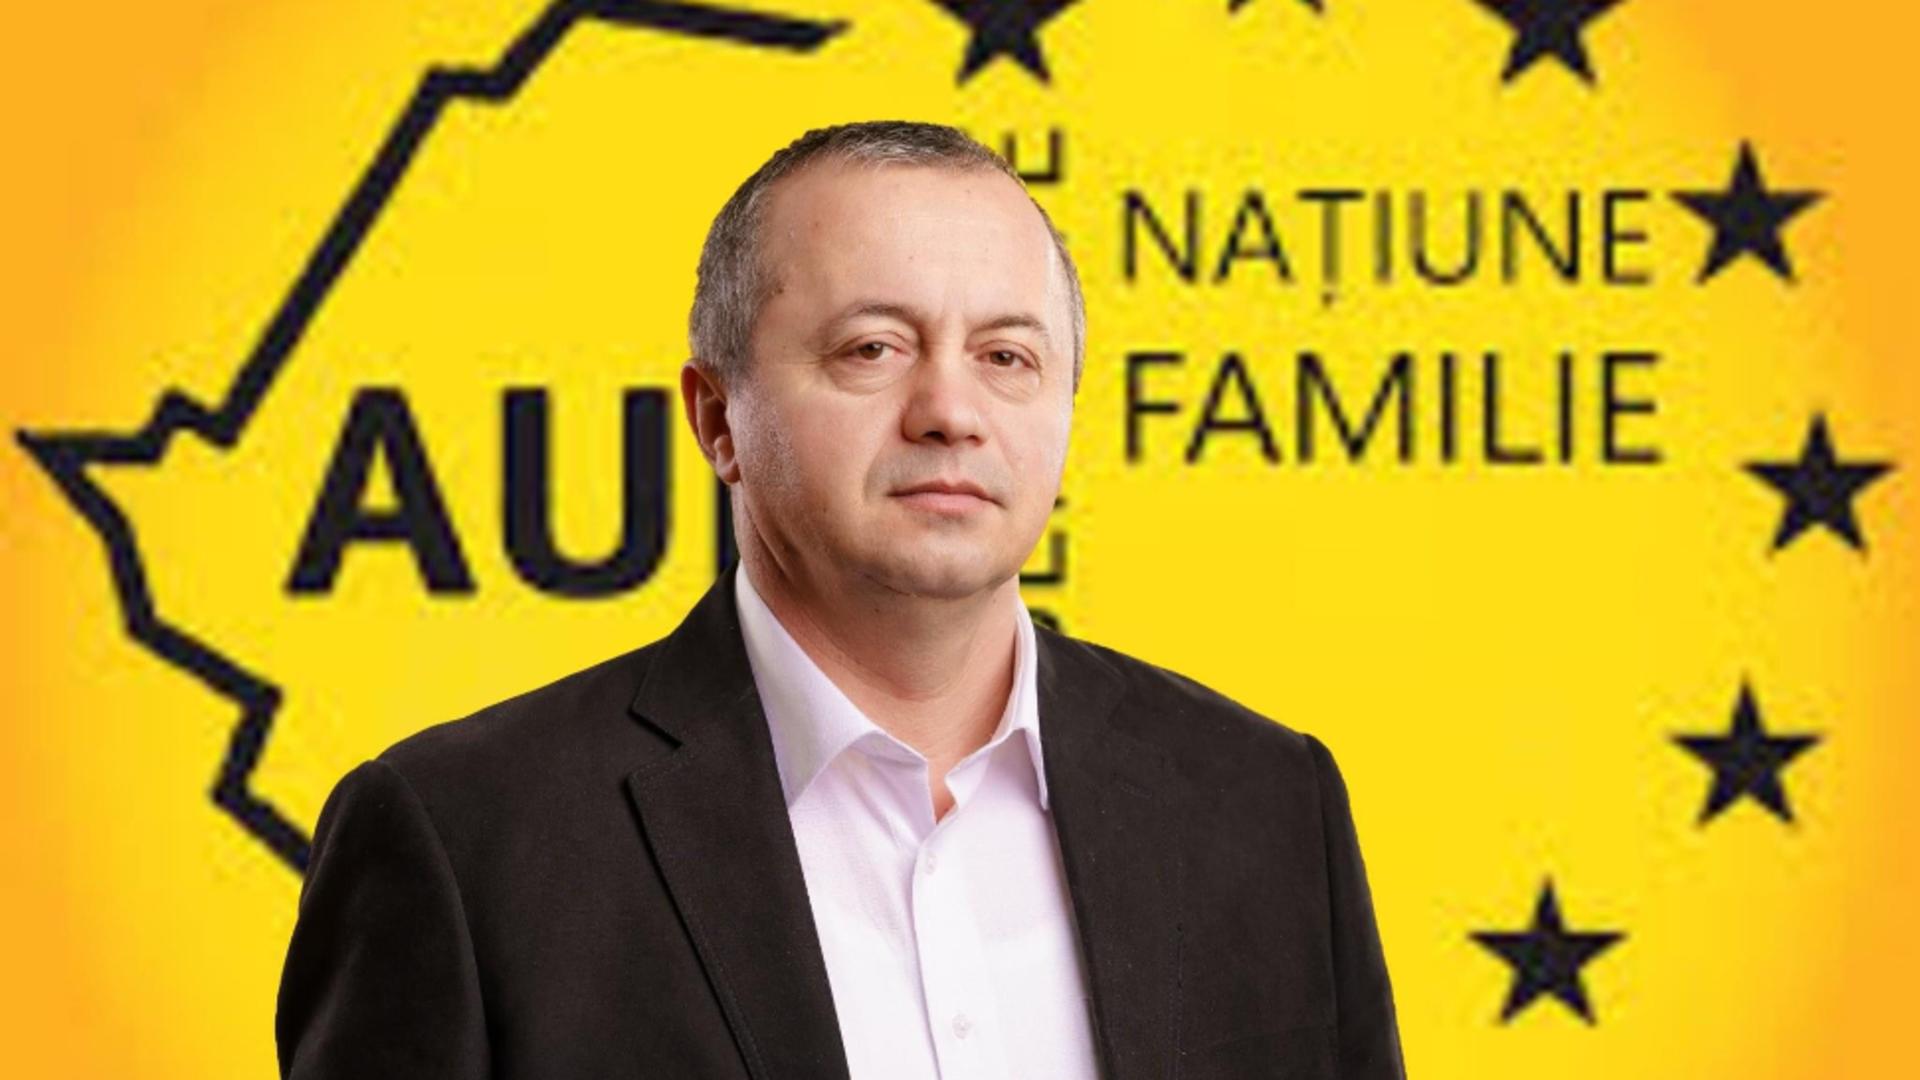 Declarație halucinantă din Parlamentul României: Ce a spus un deputat AUR despre refugiații ucraineni - De ce a șters mesajul